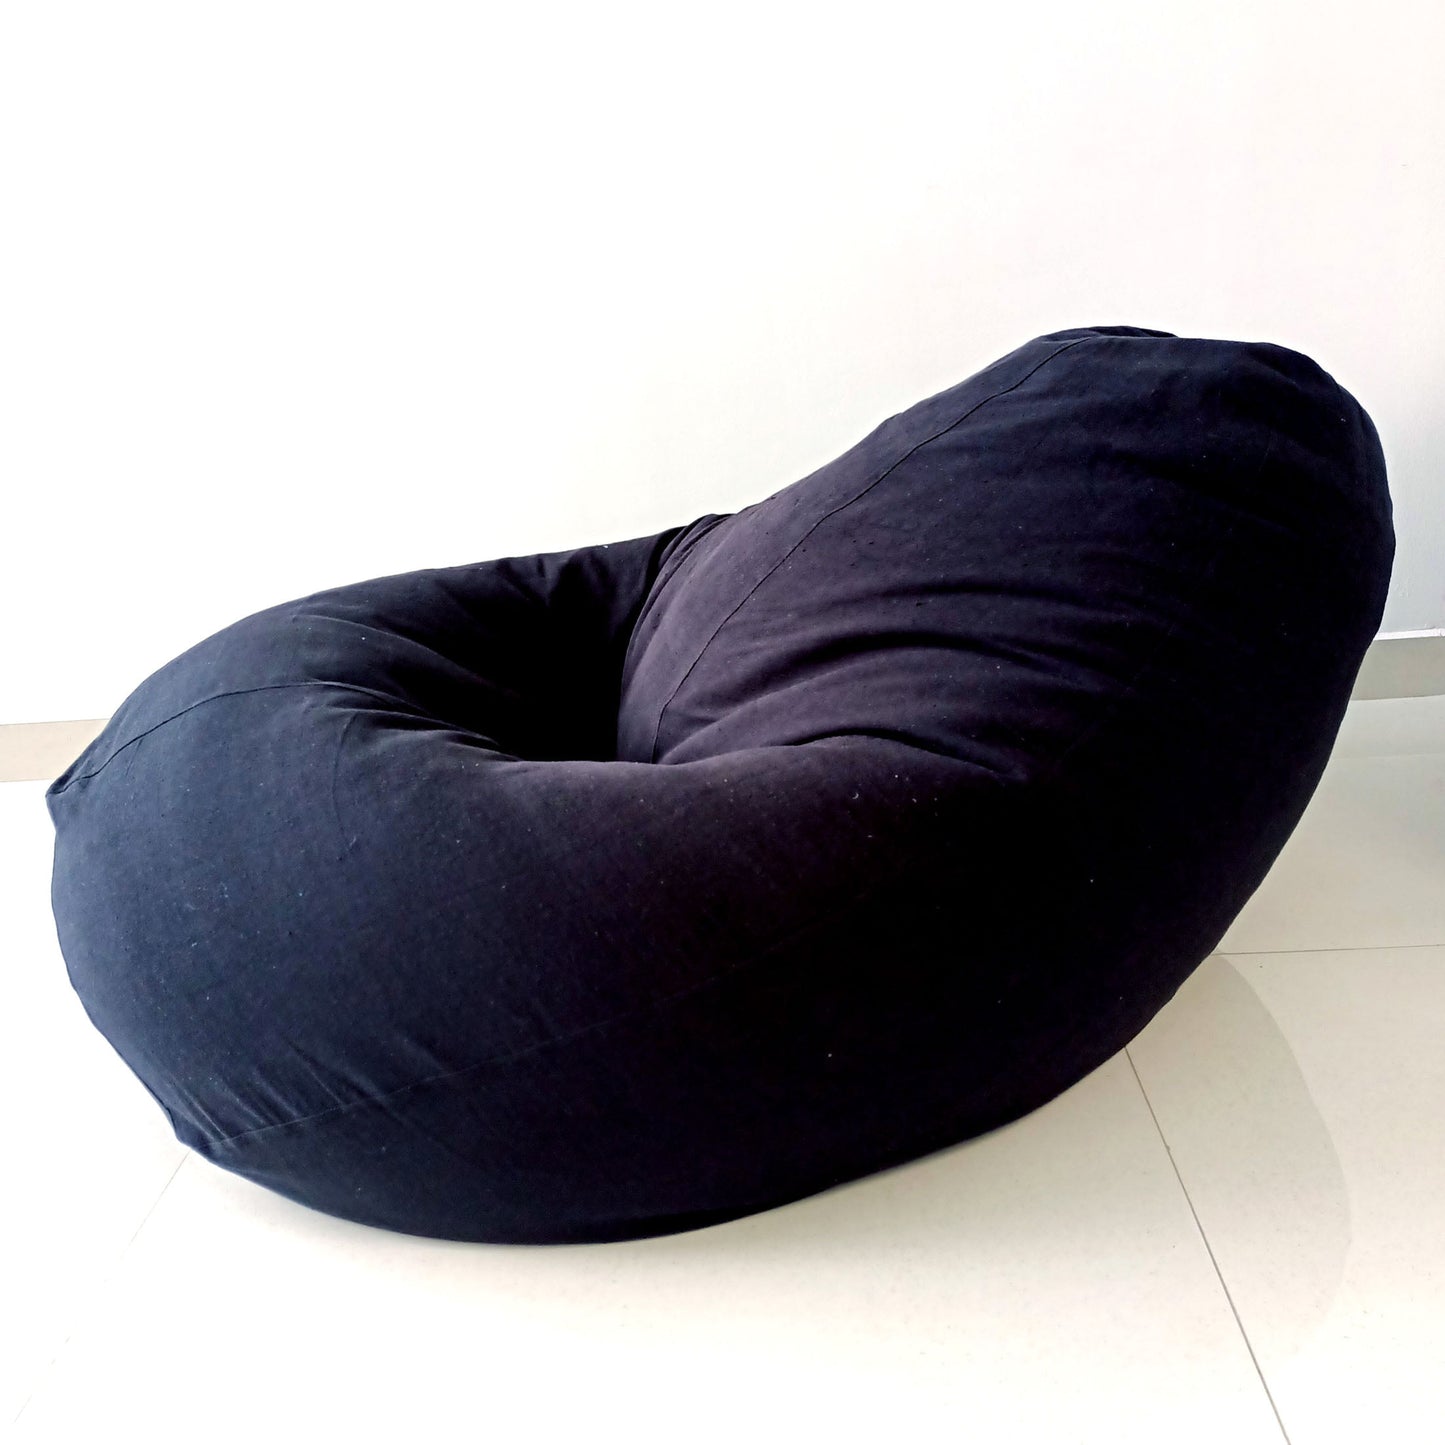 CHARCOAL Black Round XL bean bag chair in handloom cotton